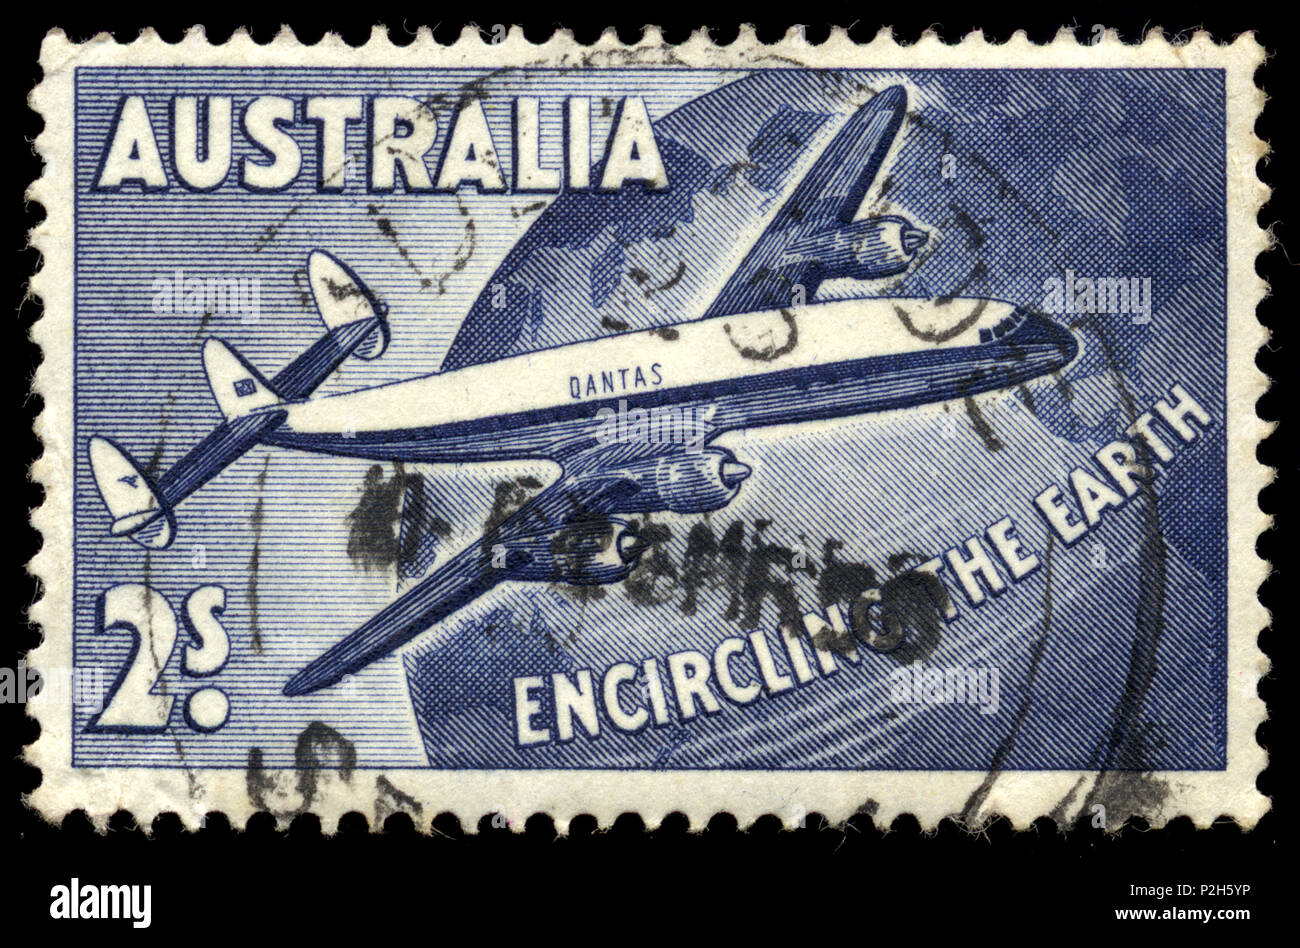 2 s blau Briefmarke zum Gedenken an den ersten geplanten der Welt air Service rund durch Qantas Airways mit zwei Lockheed Super Constellation Verkehrsflugzeuge. Stockfoto